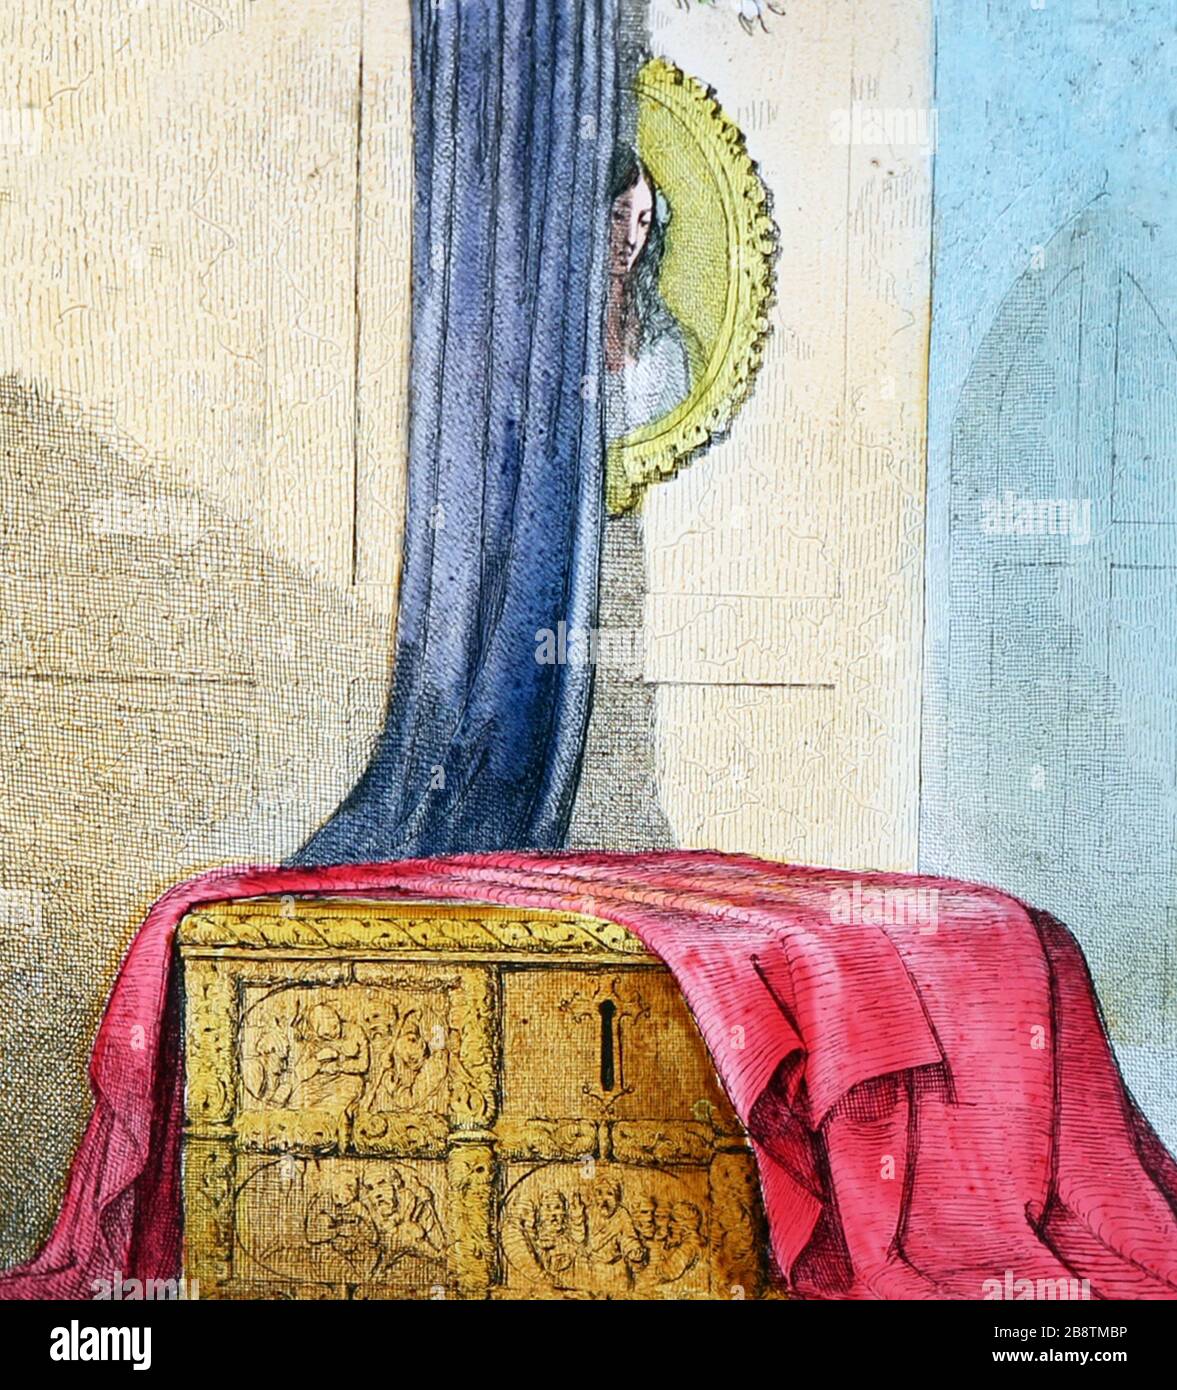 Un'illustrazione vittoriana dalla storia 'The Mistletoe Bough'. Questa è l'immagine numero 1 'la vecchia cassa di quercia'. Ci sono sette immagini in totale, tutte su Alamy. Foto Stock